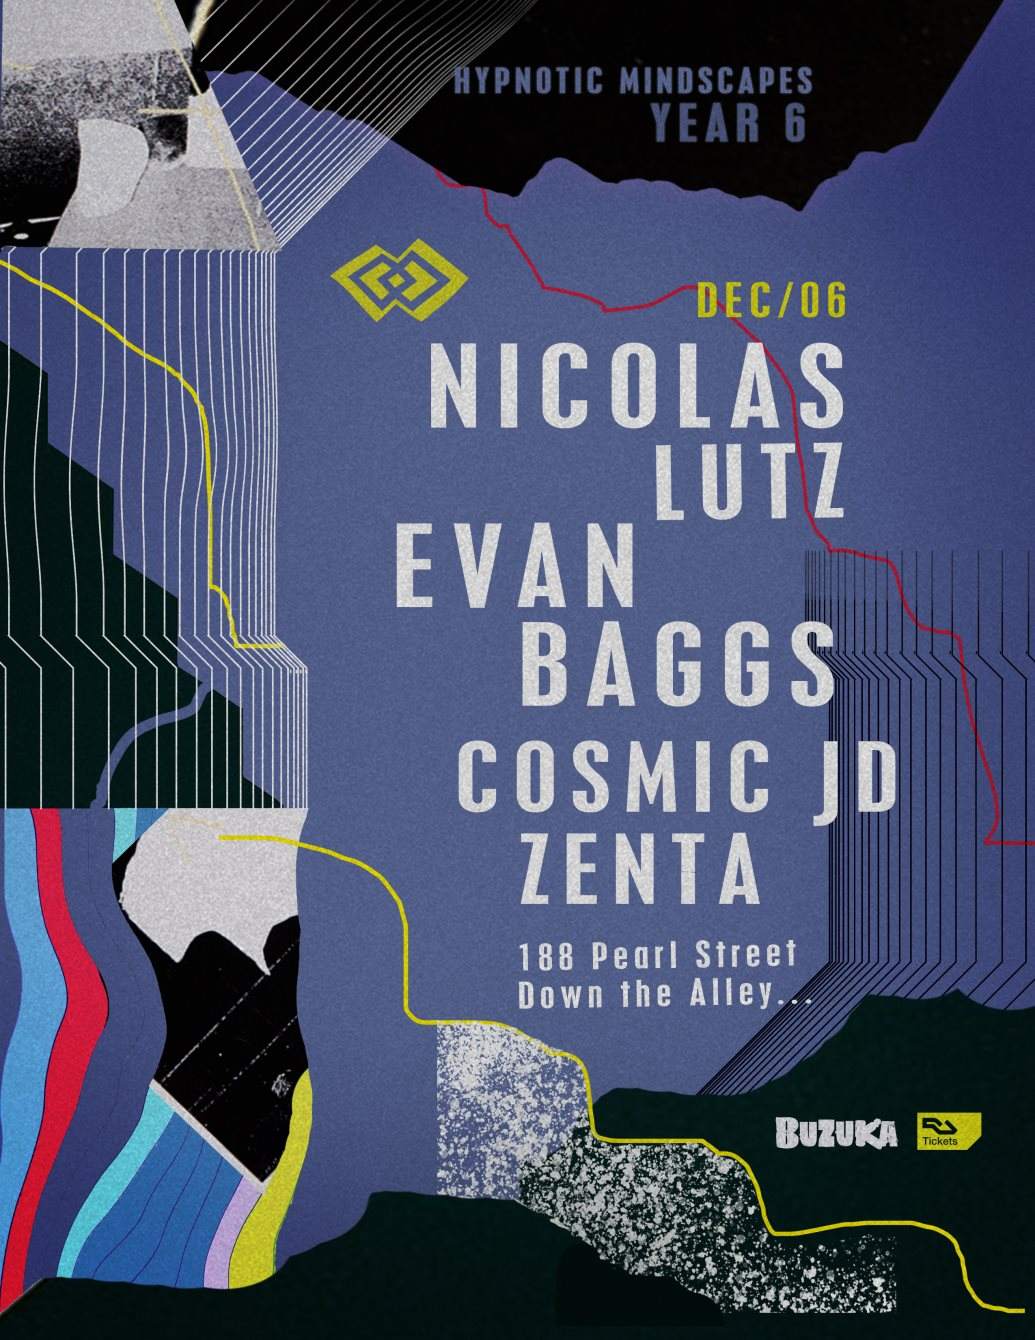 Hypnotic Mindscapes Year 6: Nicolas Lutz - Evan Baggs - Página trasera